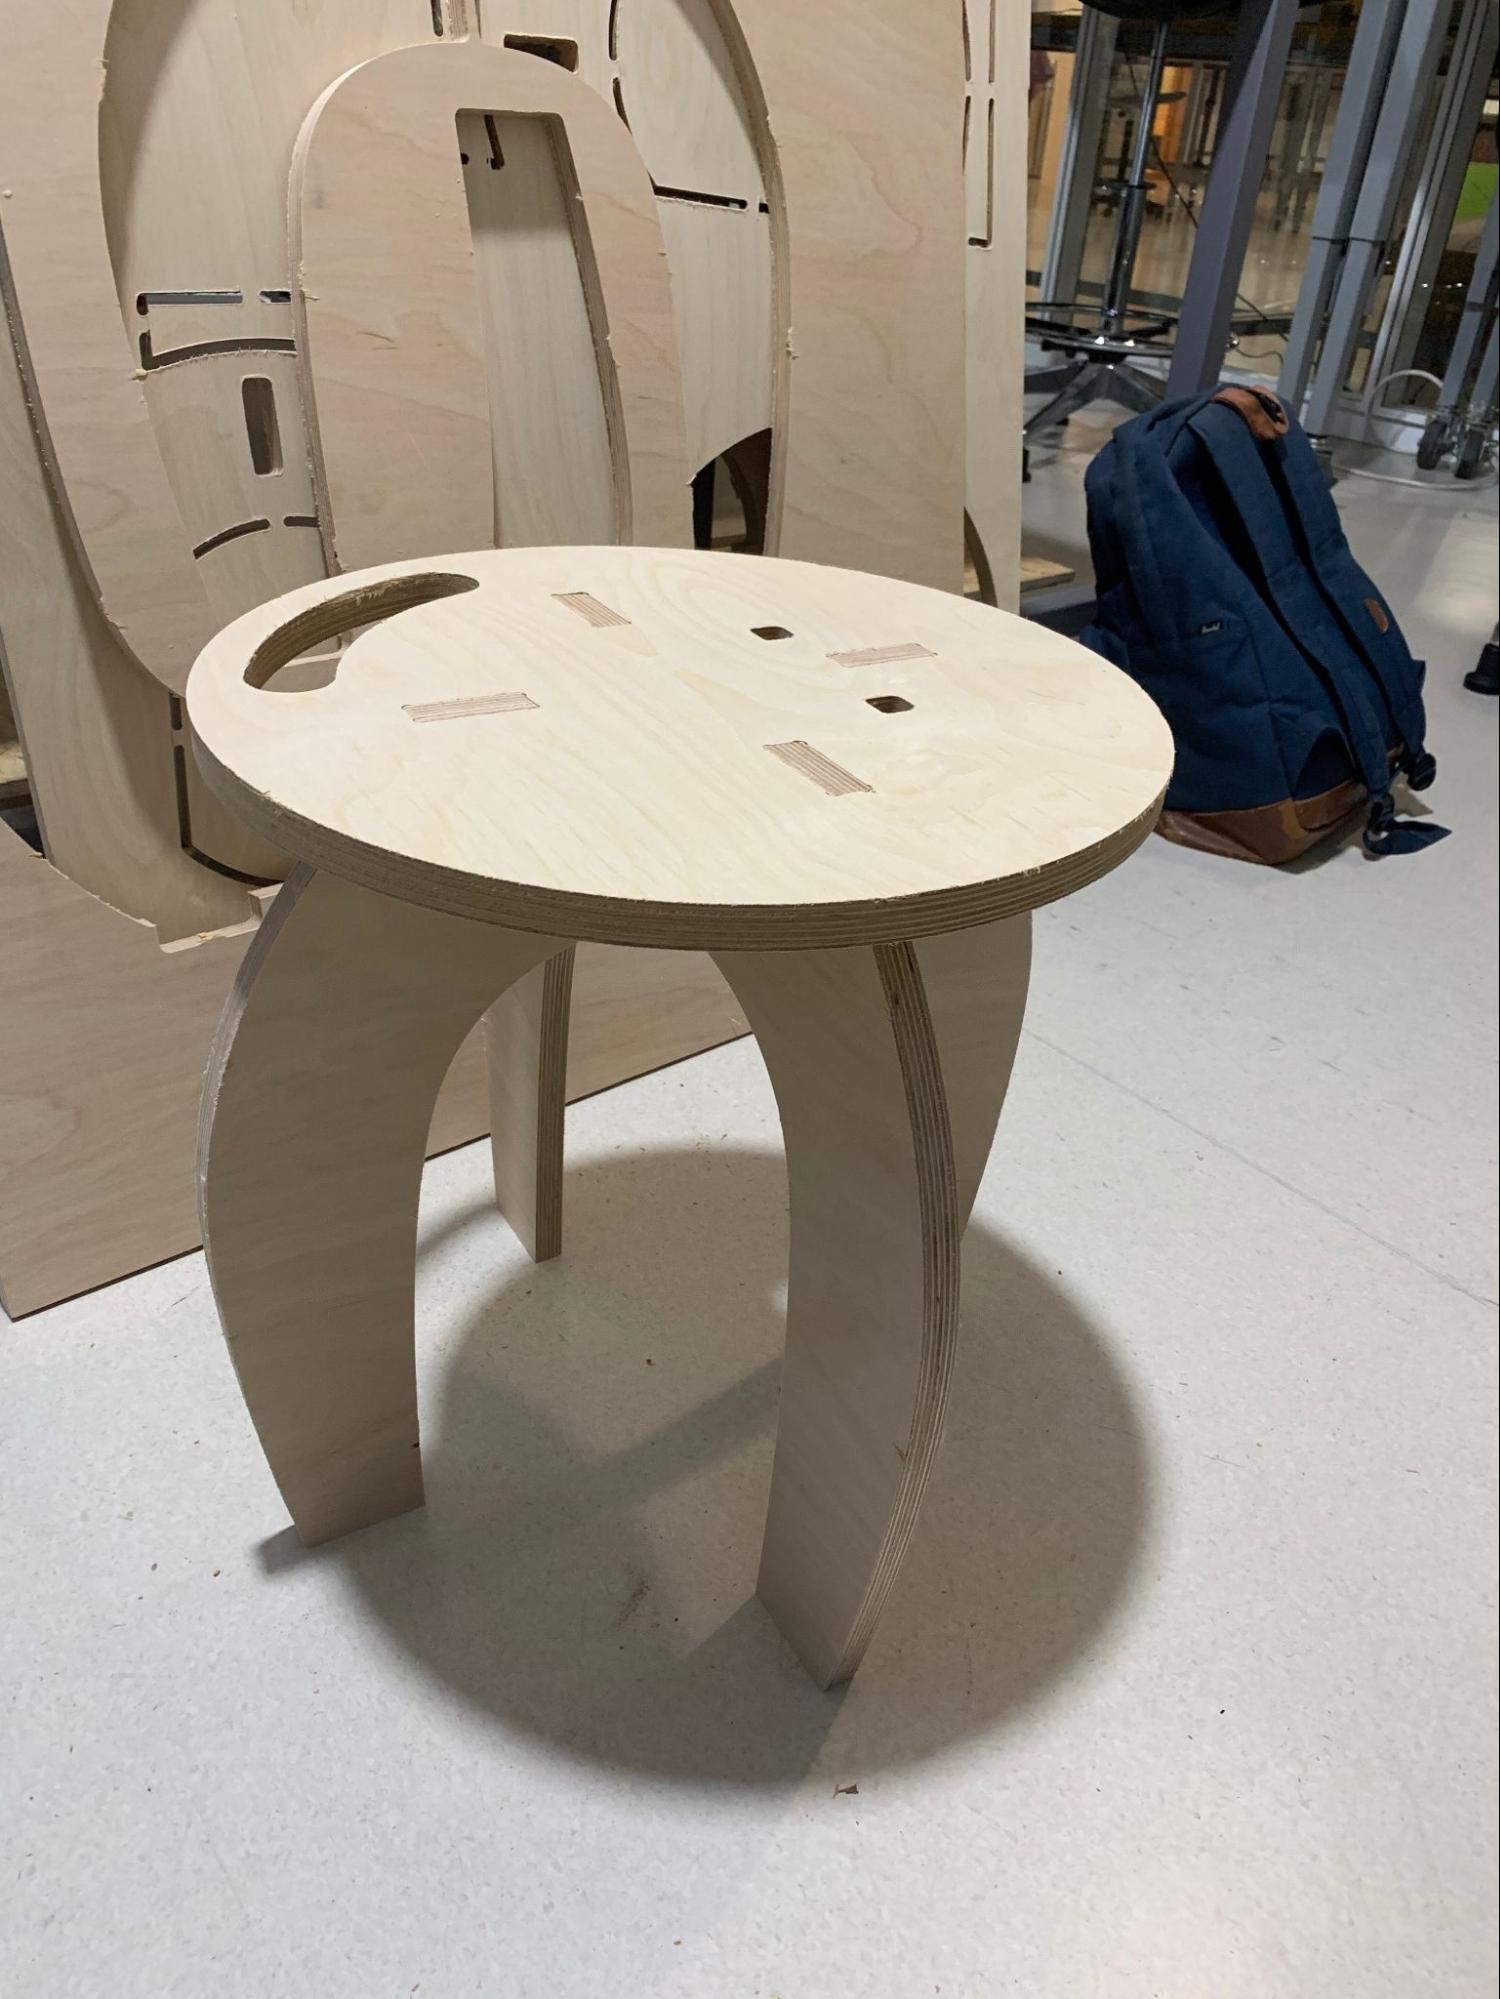 Fertig's self-designed wooden stool